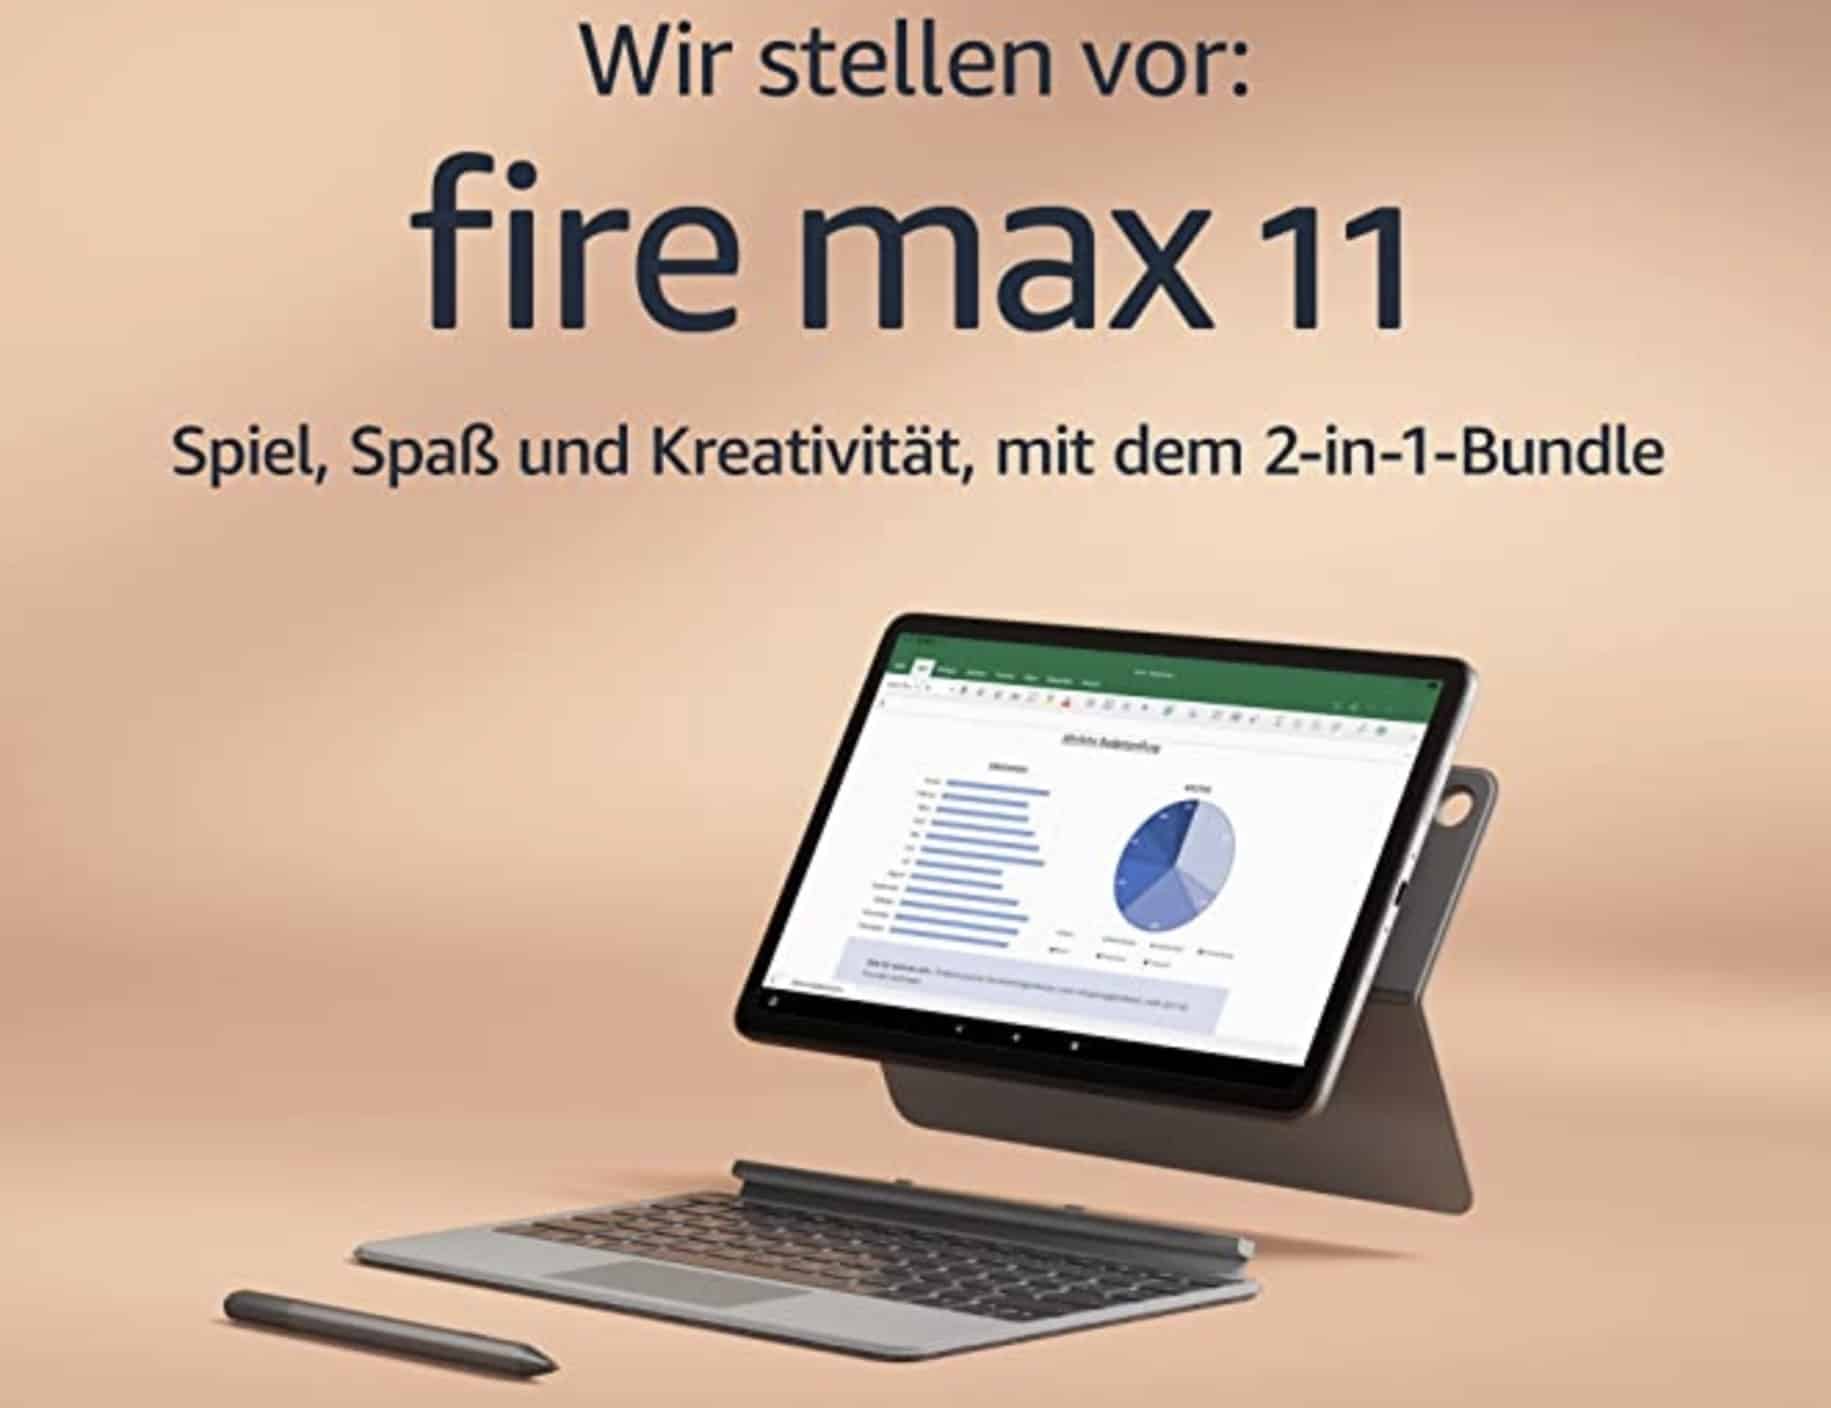 Amazon-Fire-Max-11-Premium-Anstrich-soll-mehr-K-ufer-anlocken